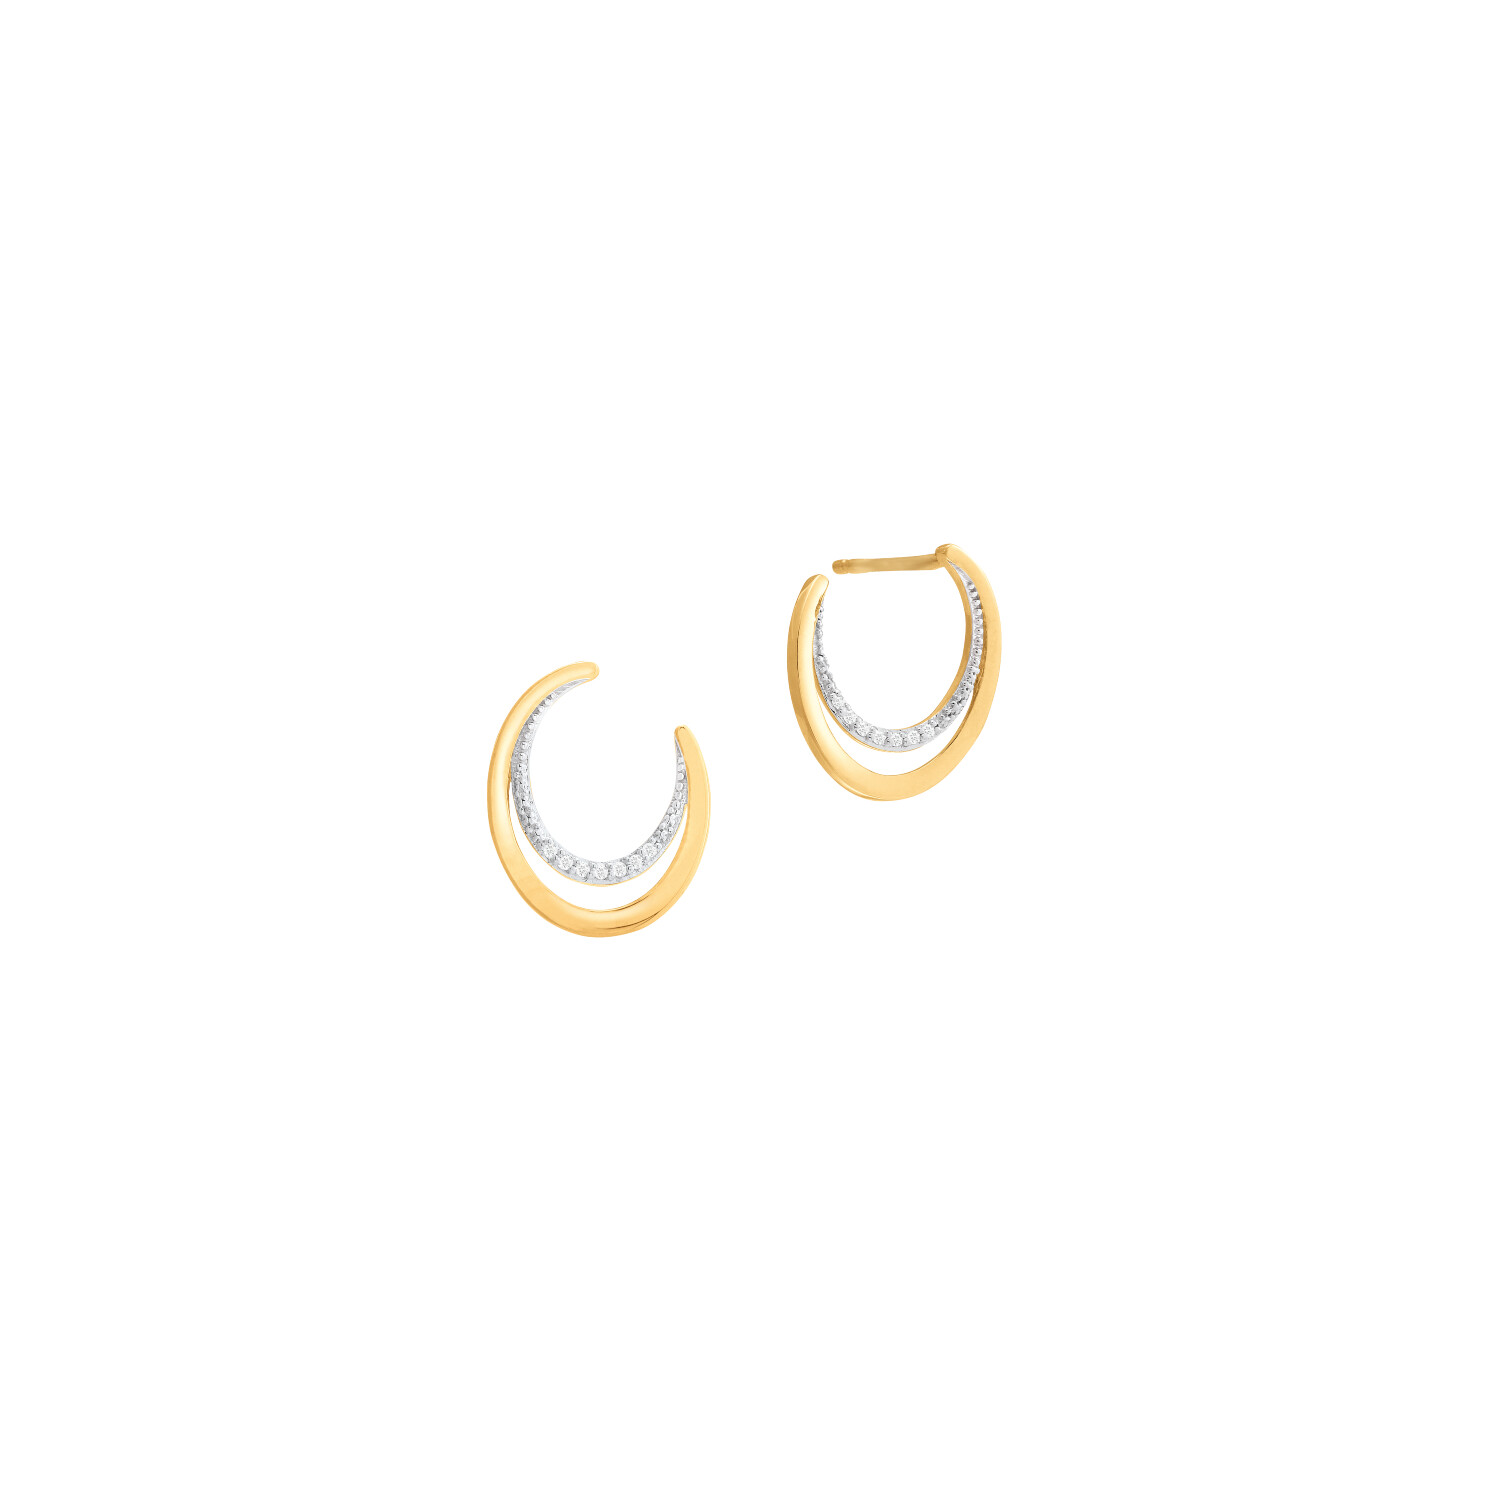 Boucles d'oreilles or jaune et diamants vue 1